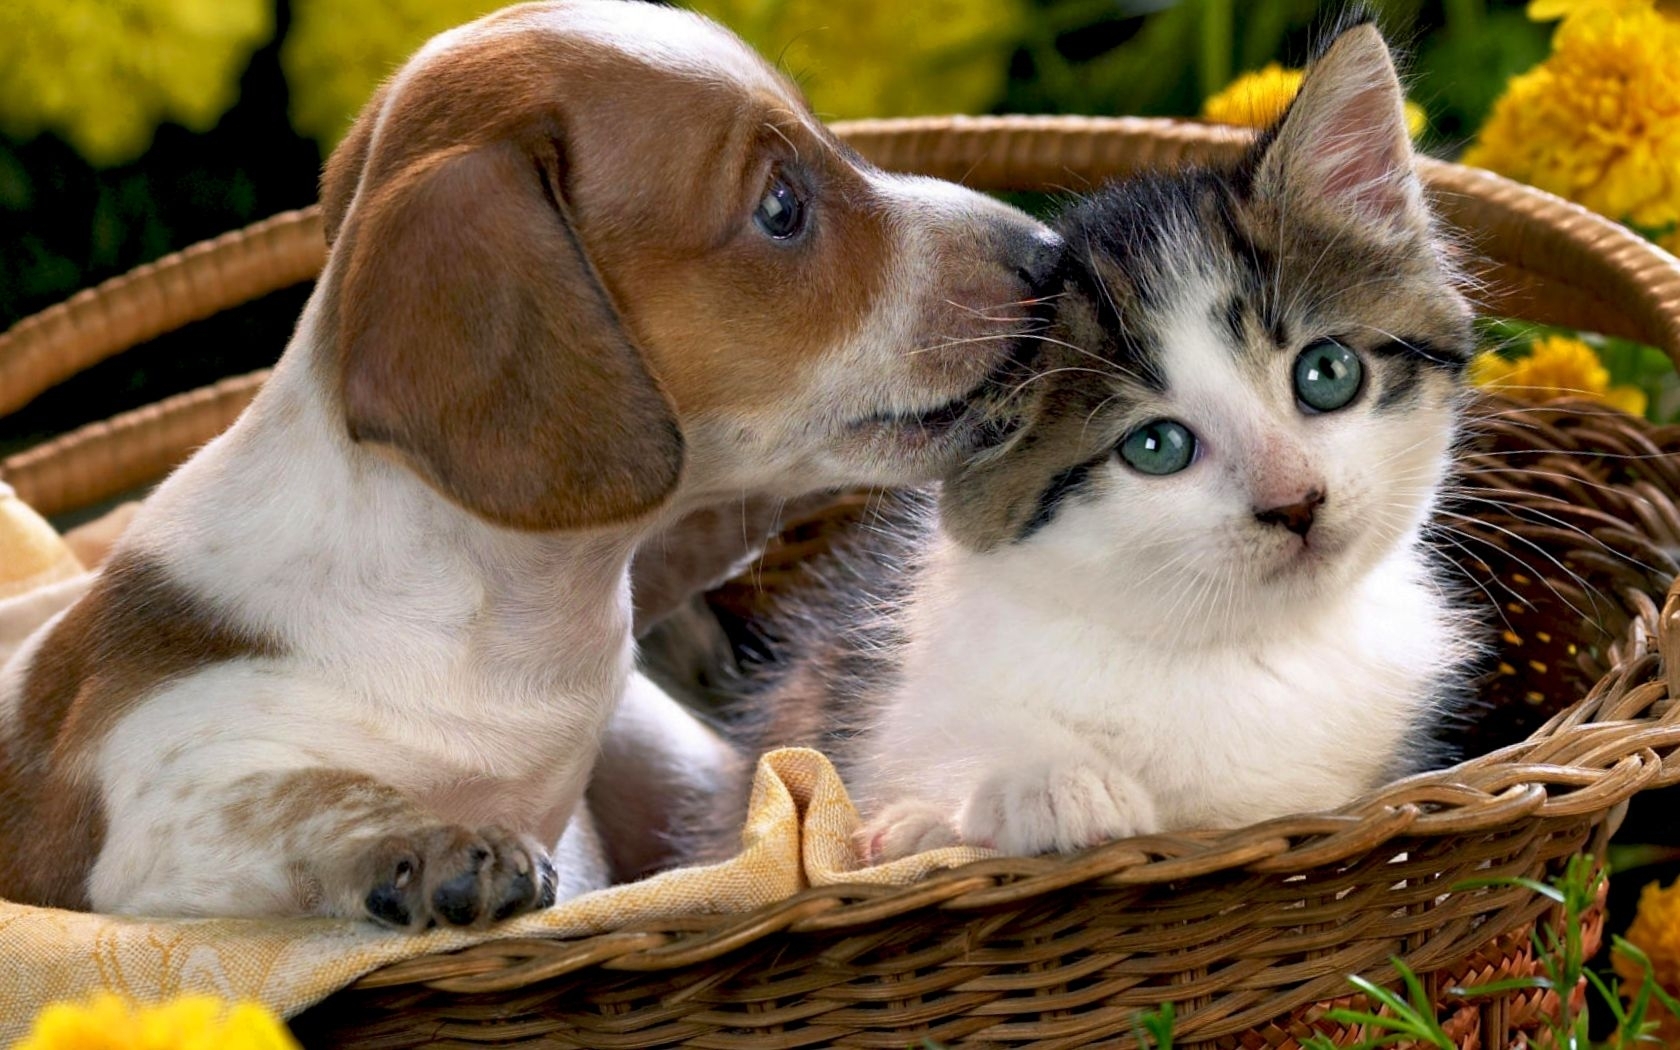 Descarga gratuita de fondo de pantalla para móvil de Animales, Gatos, Perros.